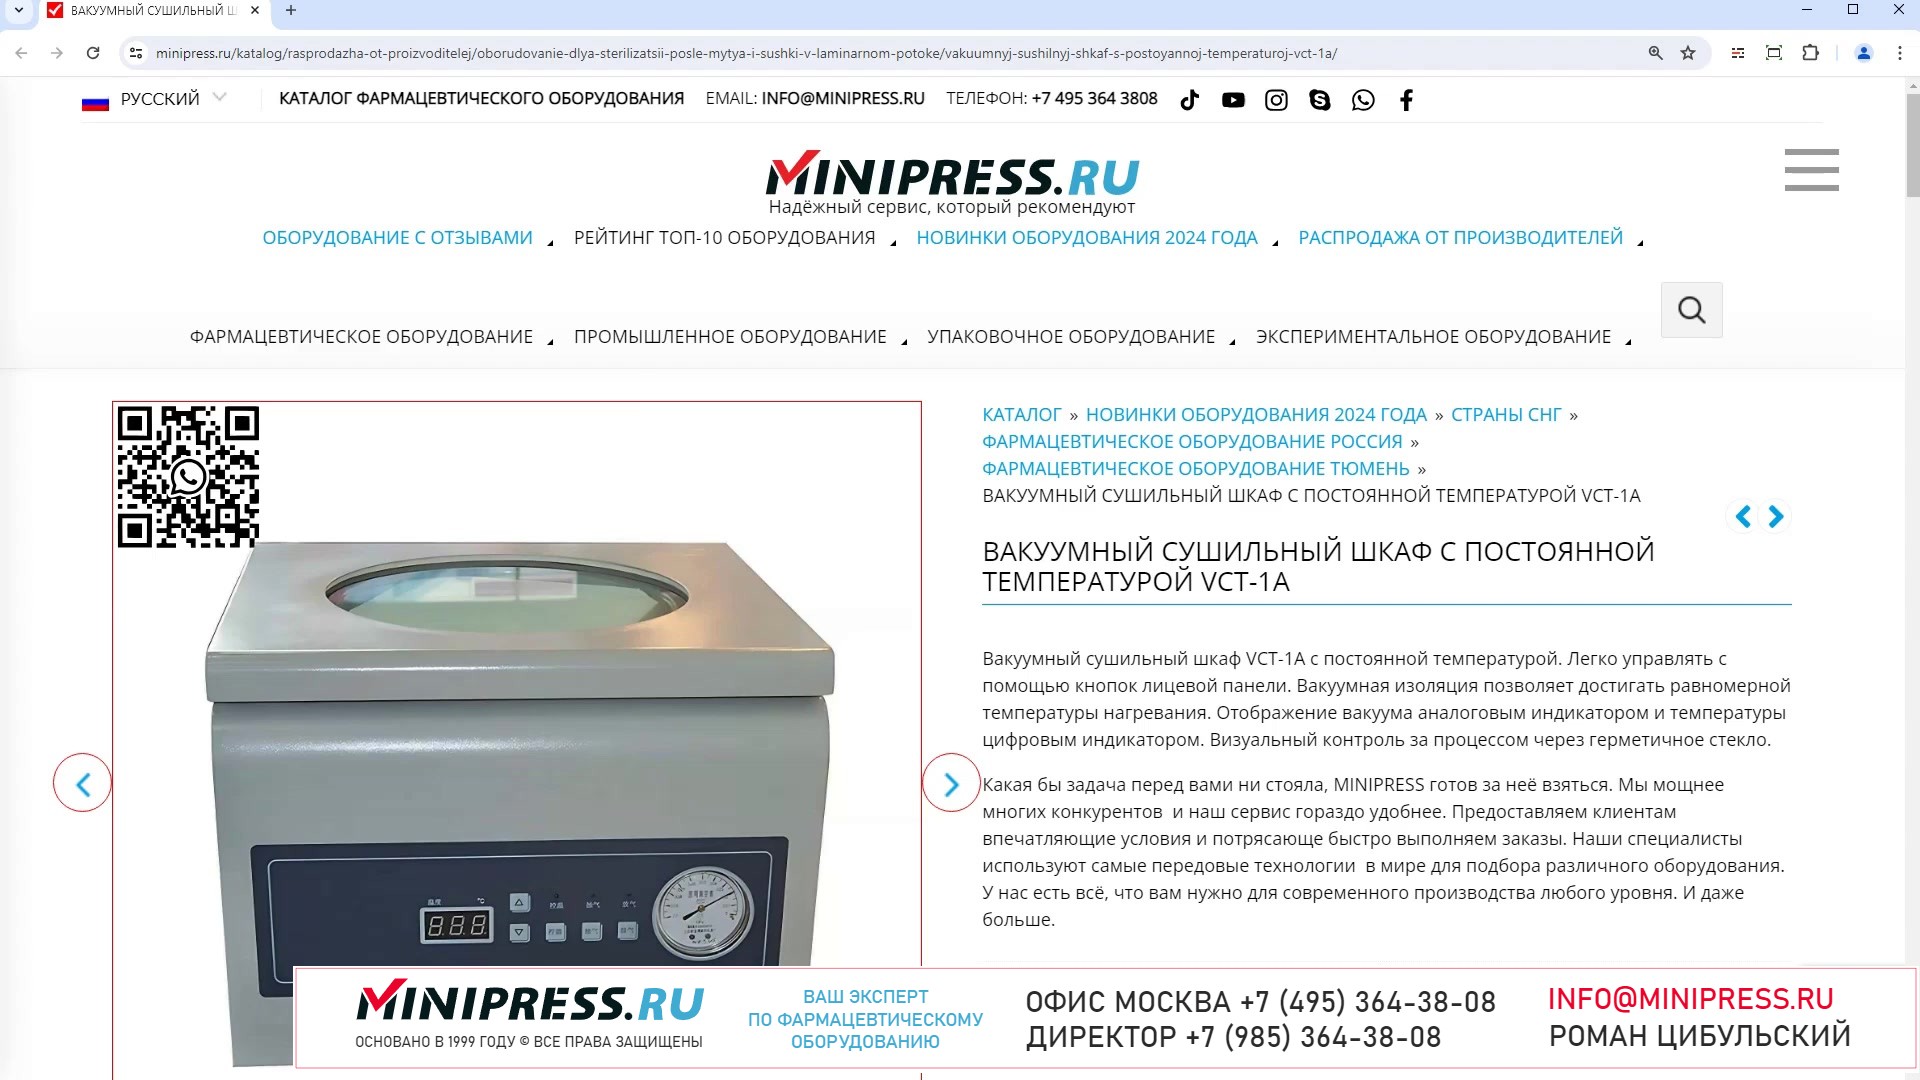 Minipress.ru Вакуумный сушильный шкаф с постоянной температурой VCT-1A